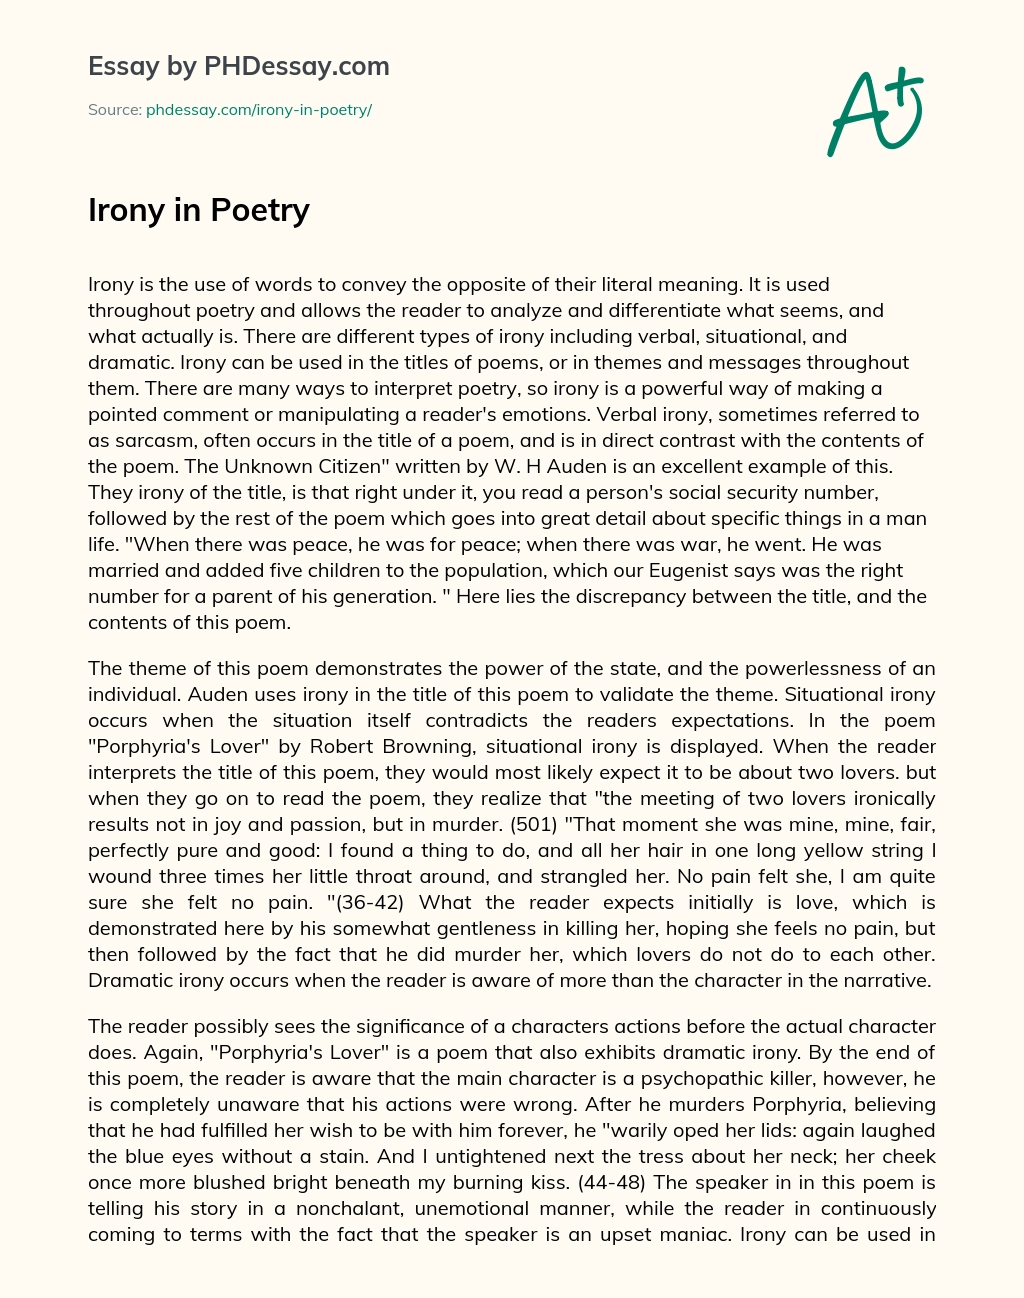 Irony in Poetry essay